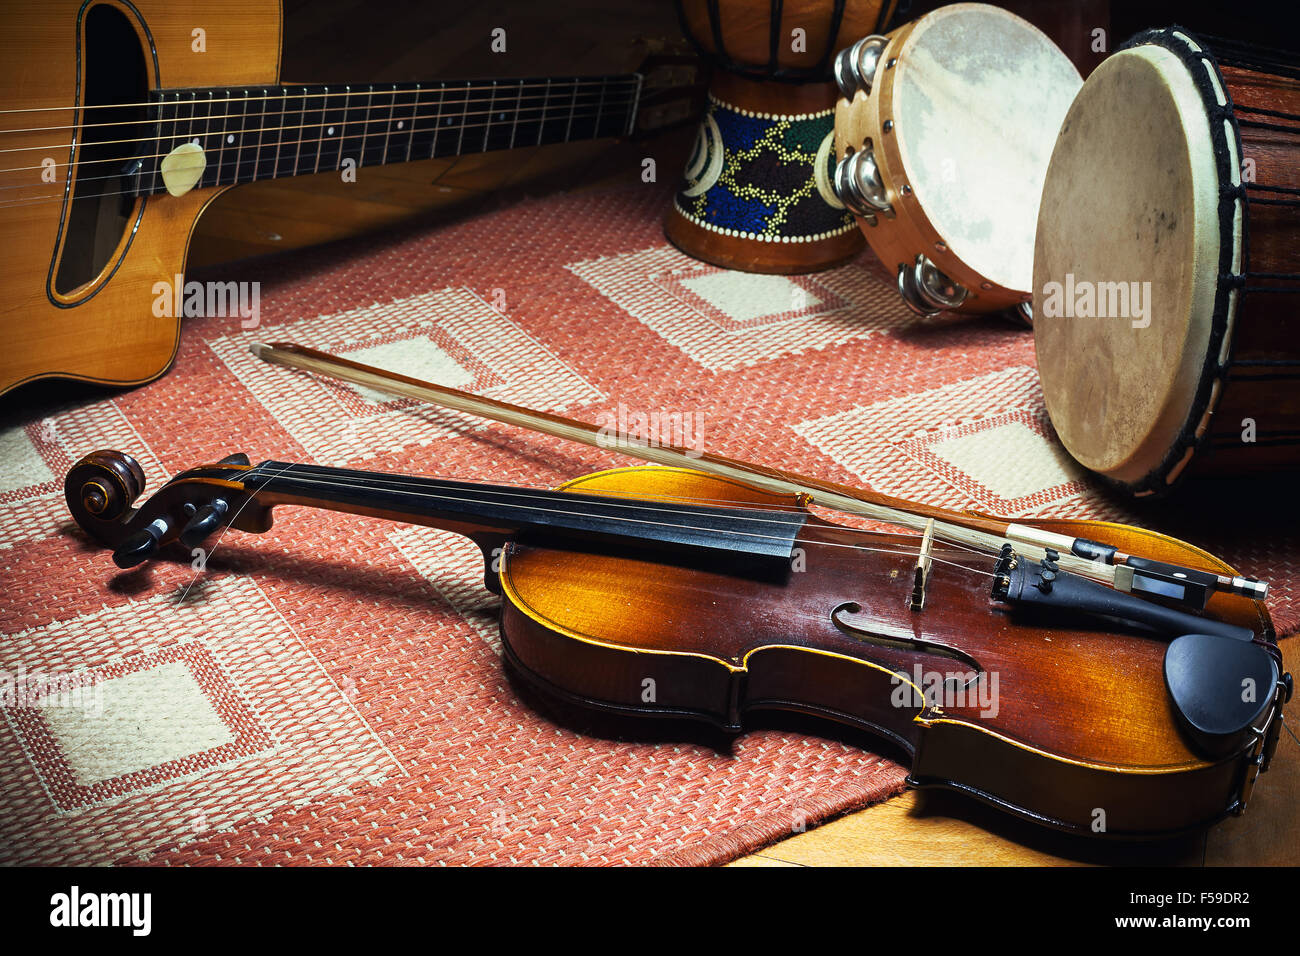 Le violon, la guitare acoustique et de percussions sur tapis, sol carrelé et européen style folkloriques des Balkans. Banque D'Images